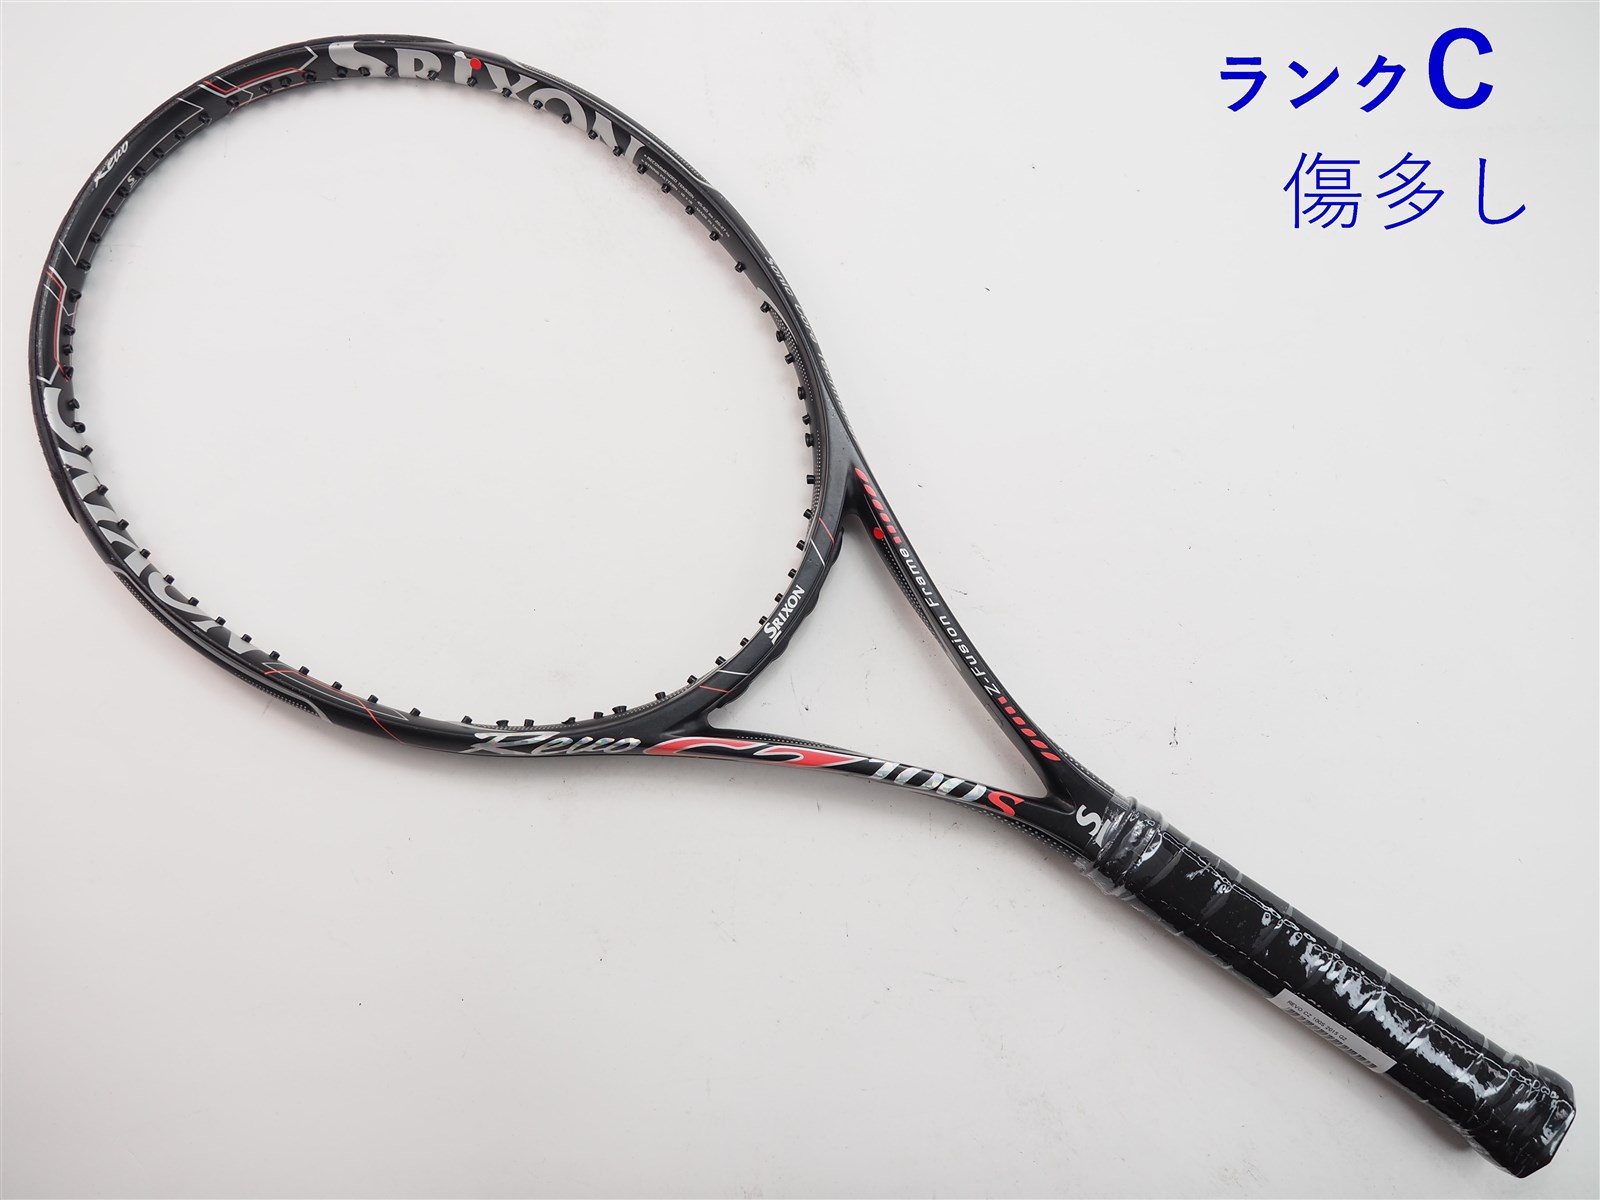 テニスラケット スリクソン レヴォ CV 5.0 OS 2016年モデル (G2)SRIXON REVO CV 5.0 OS 2016